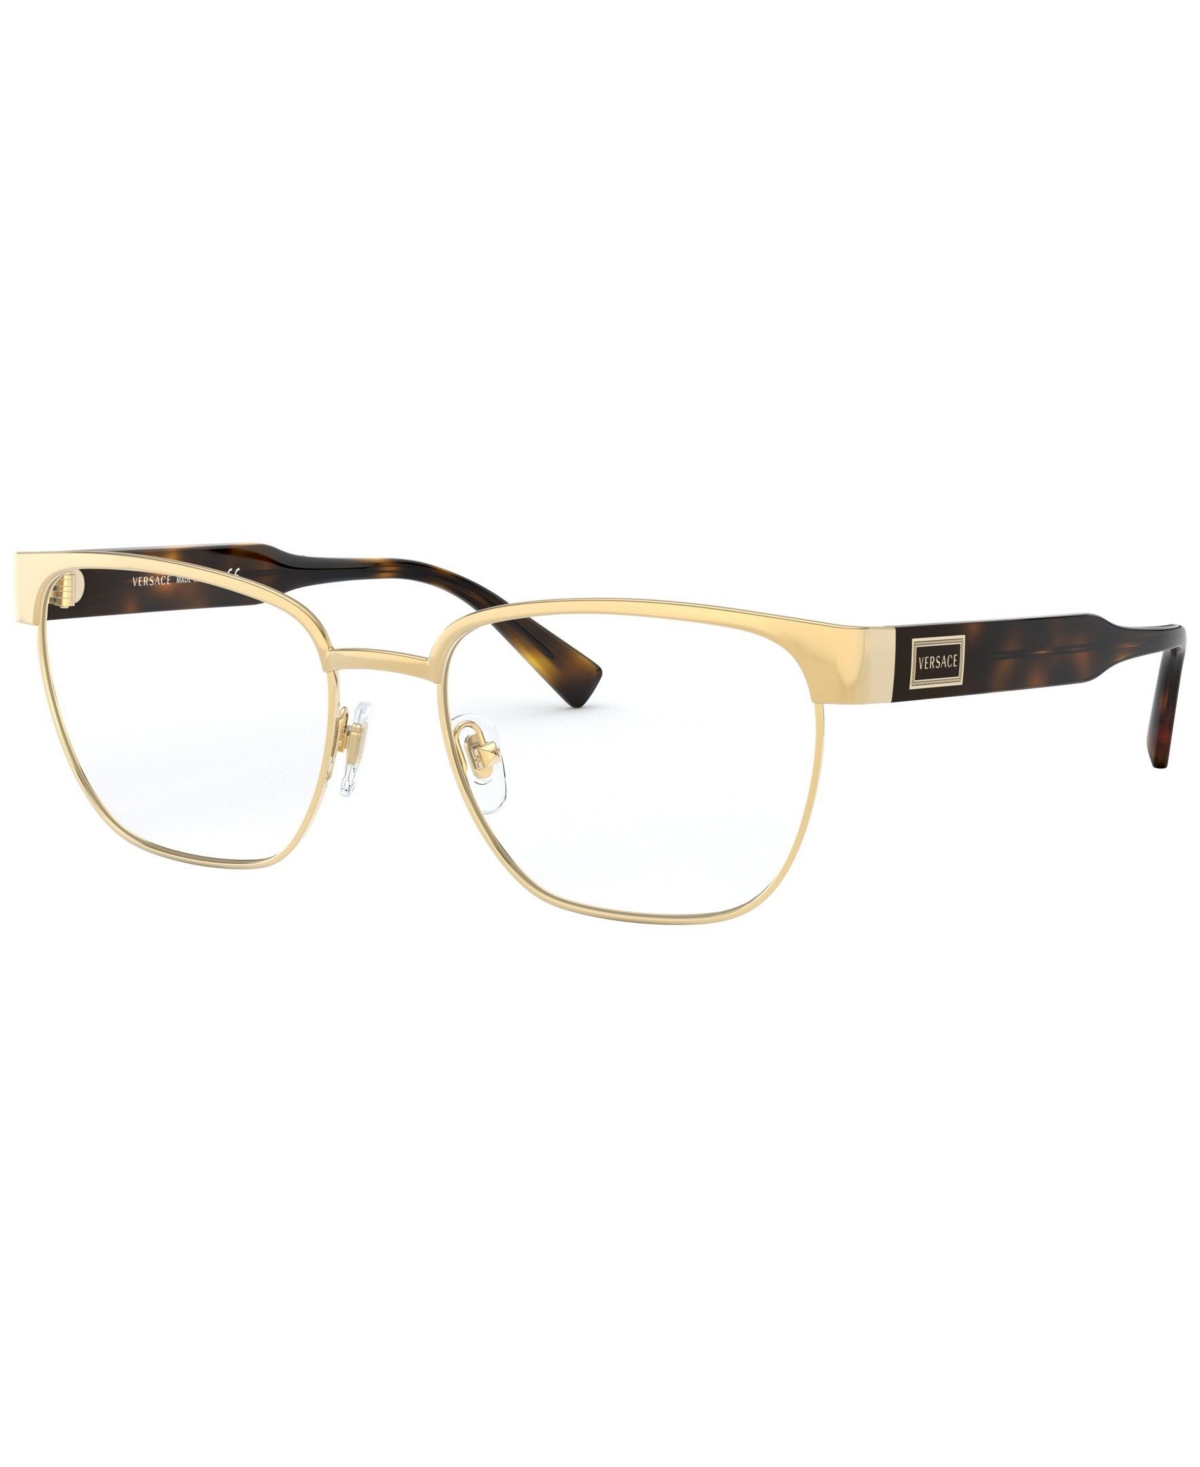 VE1264 Men's Pillow Eyeglasses - Gold